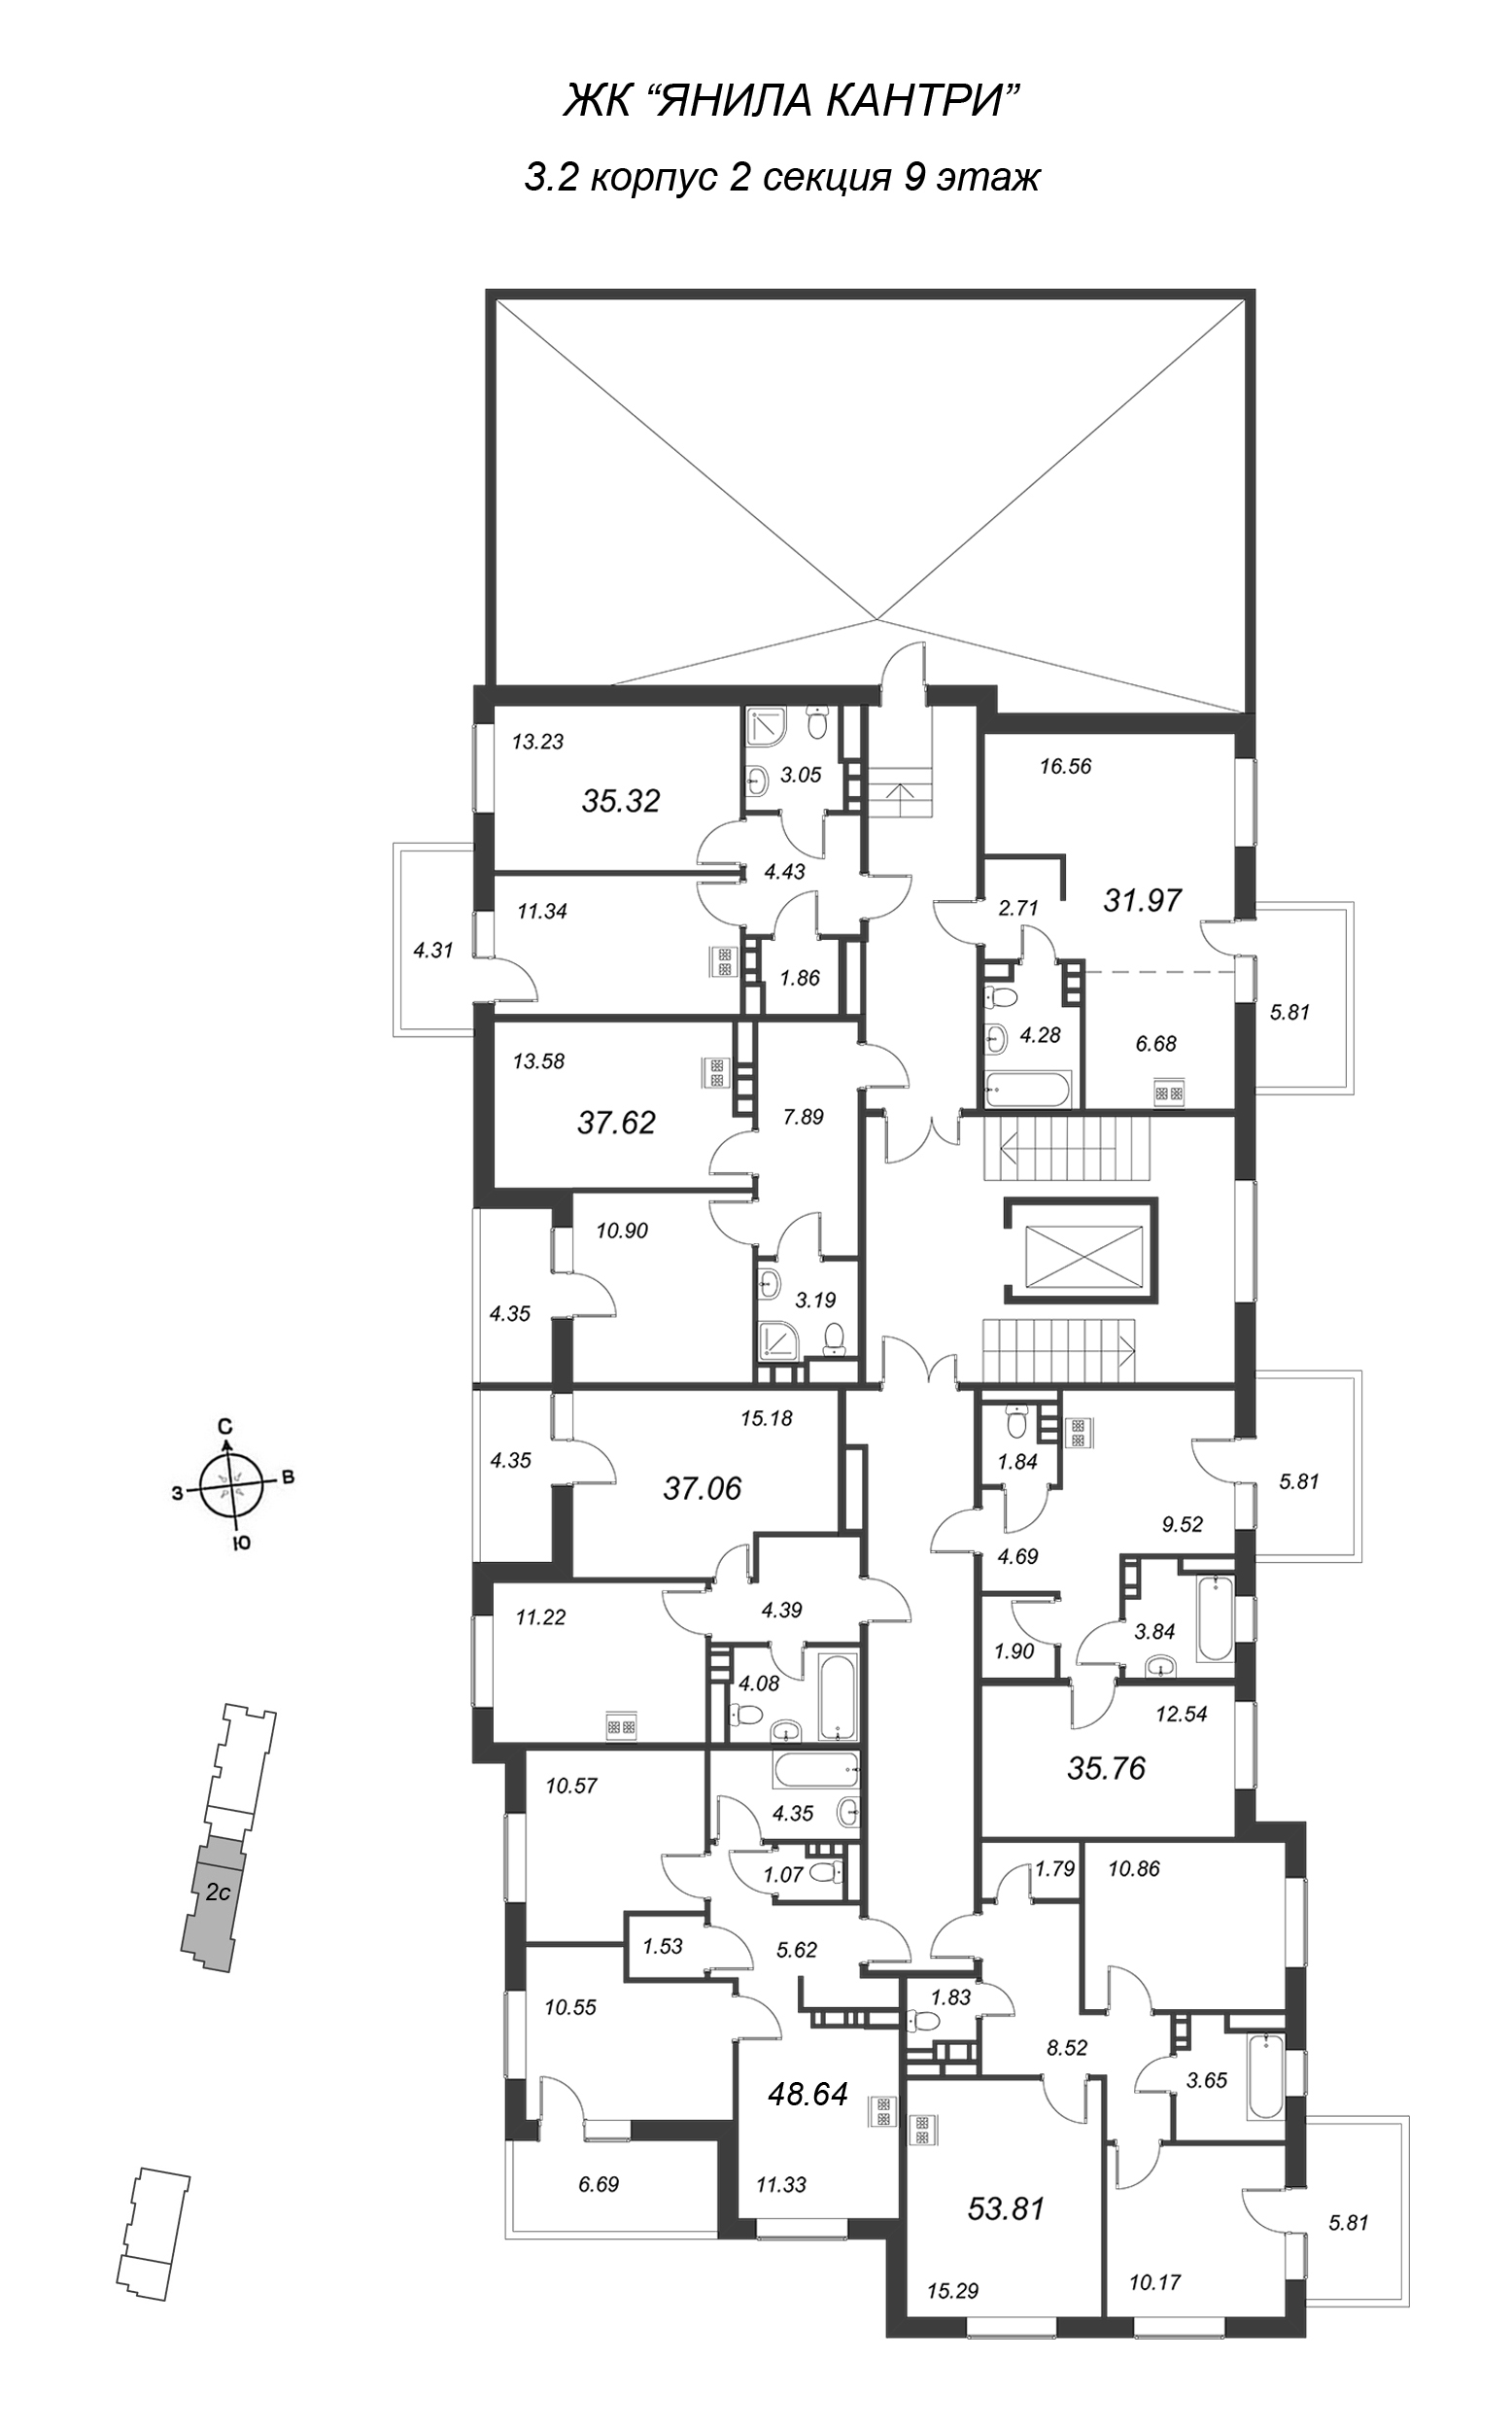 1-комнатная квартира, 34.02 м² - планировка этажа